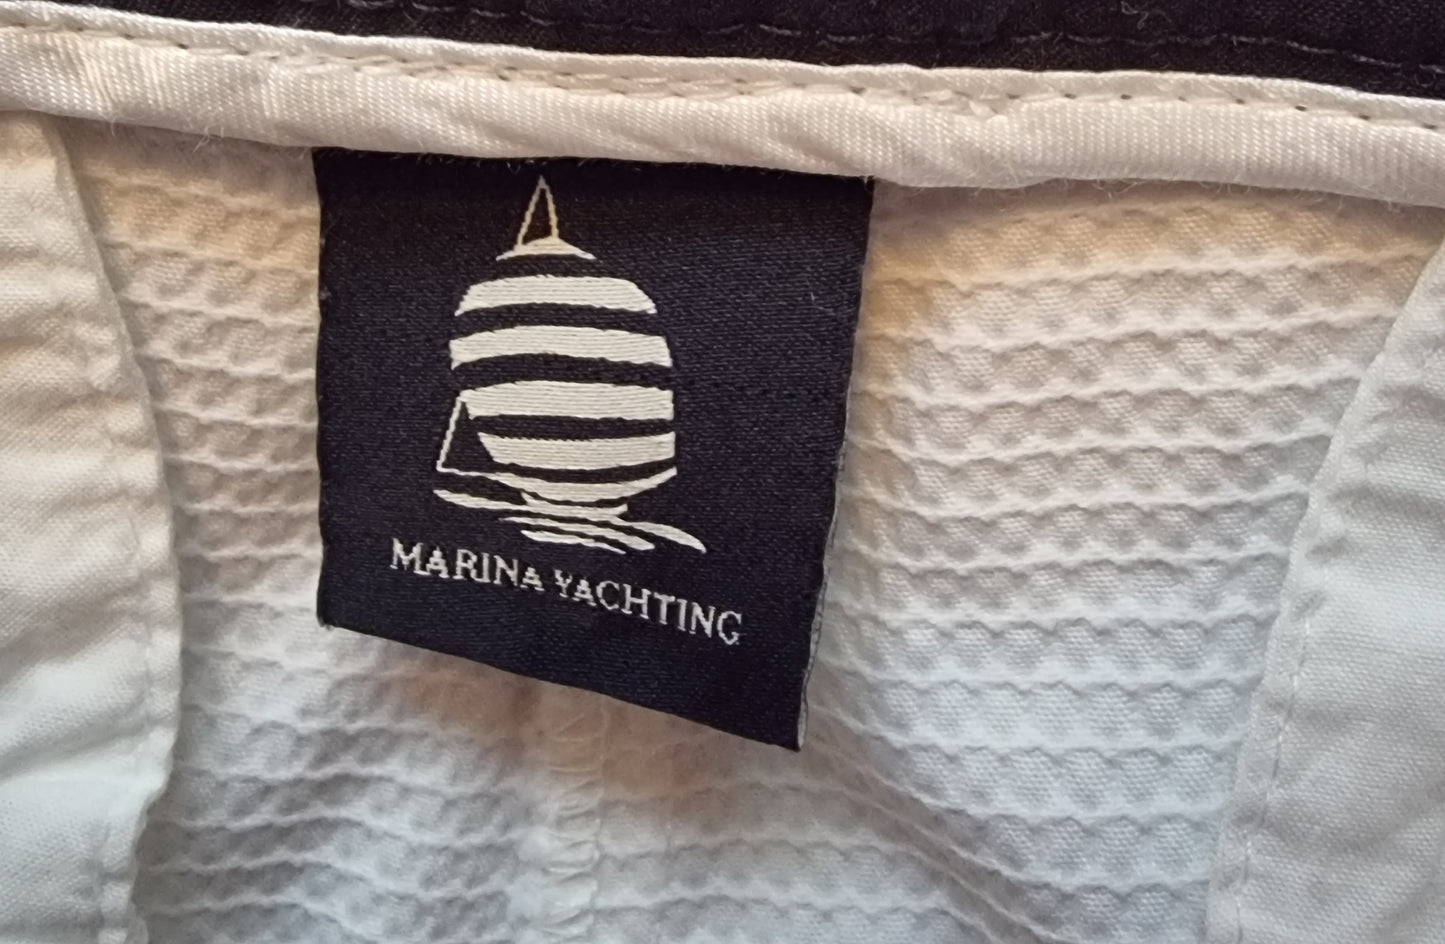 Marina Yachting White Women's Stretch Chino Trousers UK 10 US 6 EU 38 Timeless Fashions